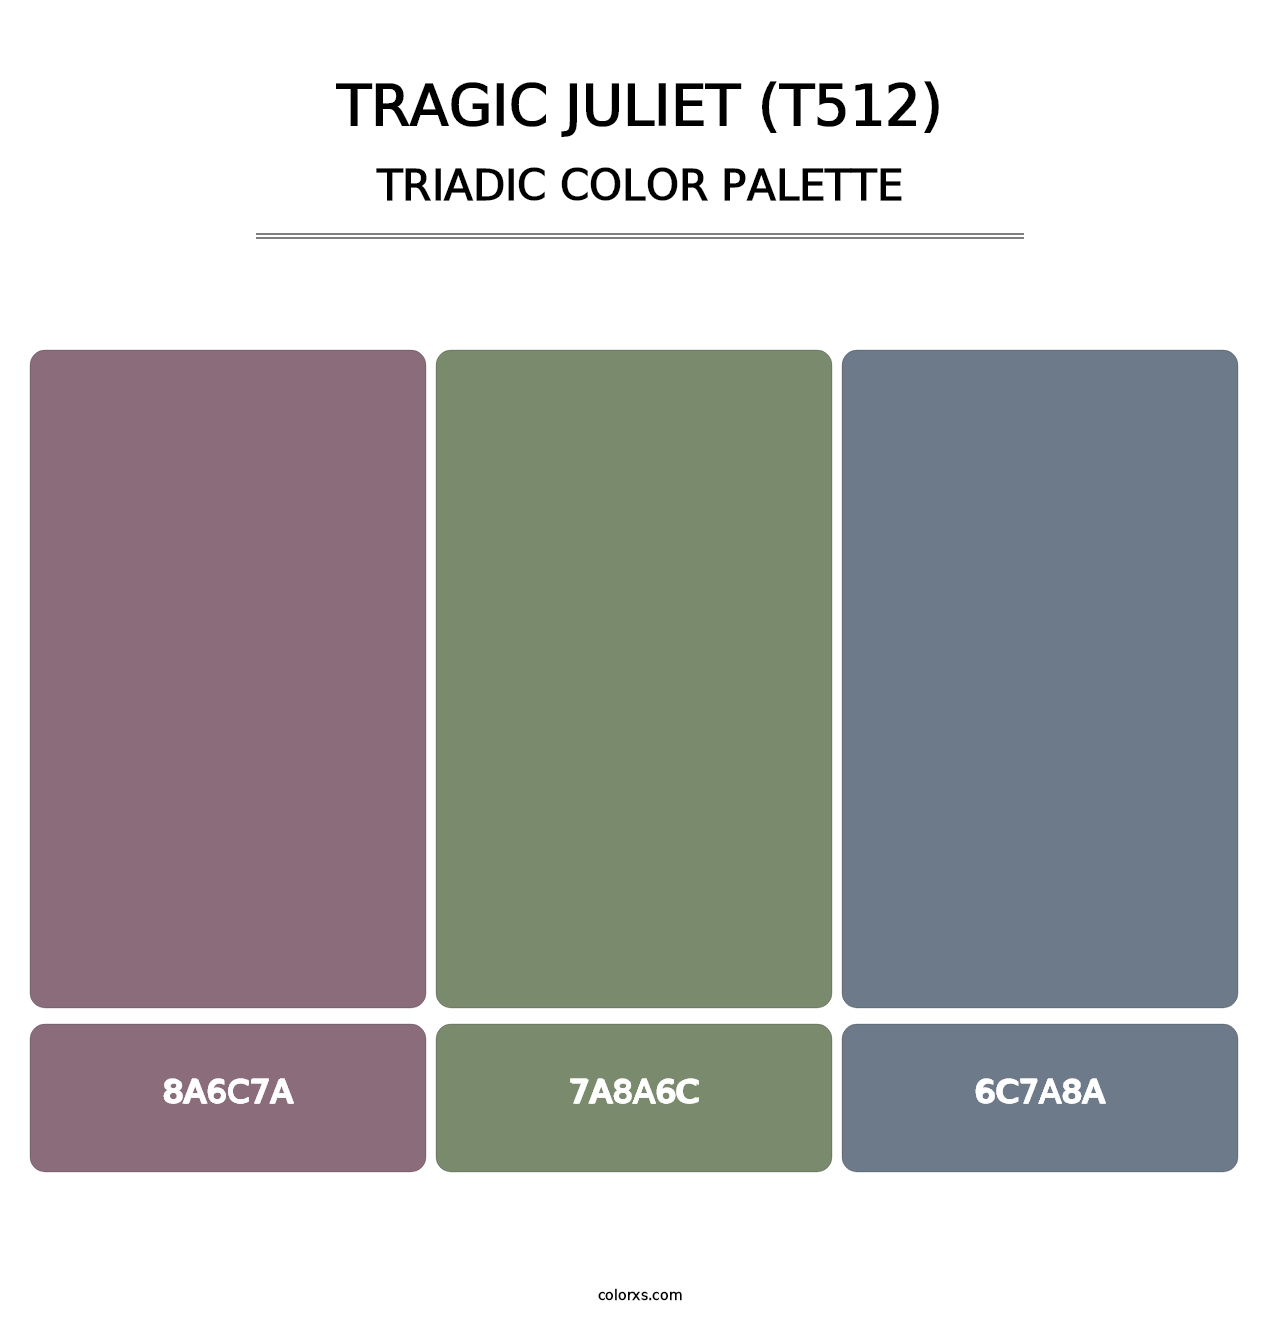 Tragic Juliet (T512) - Triadic Color Palette